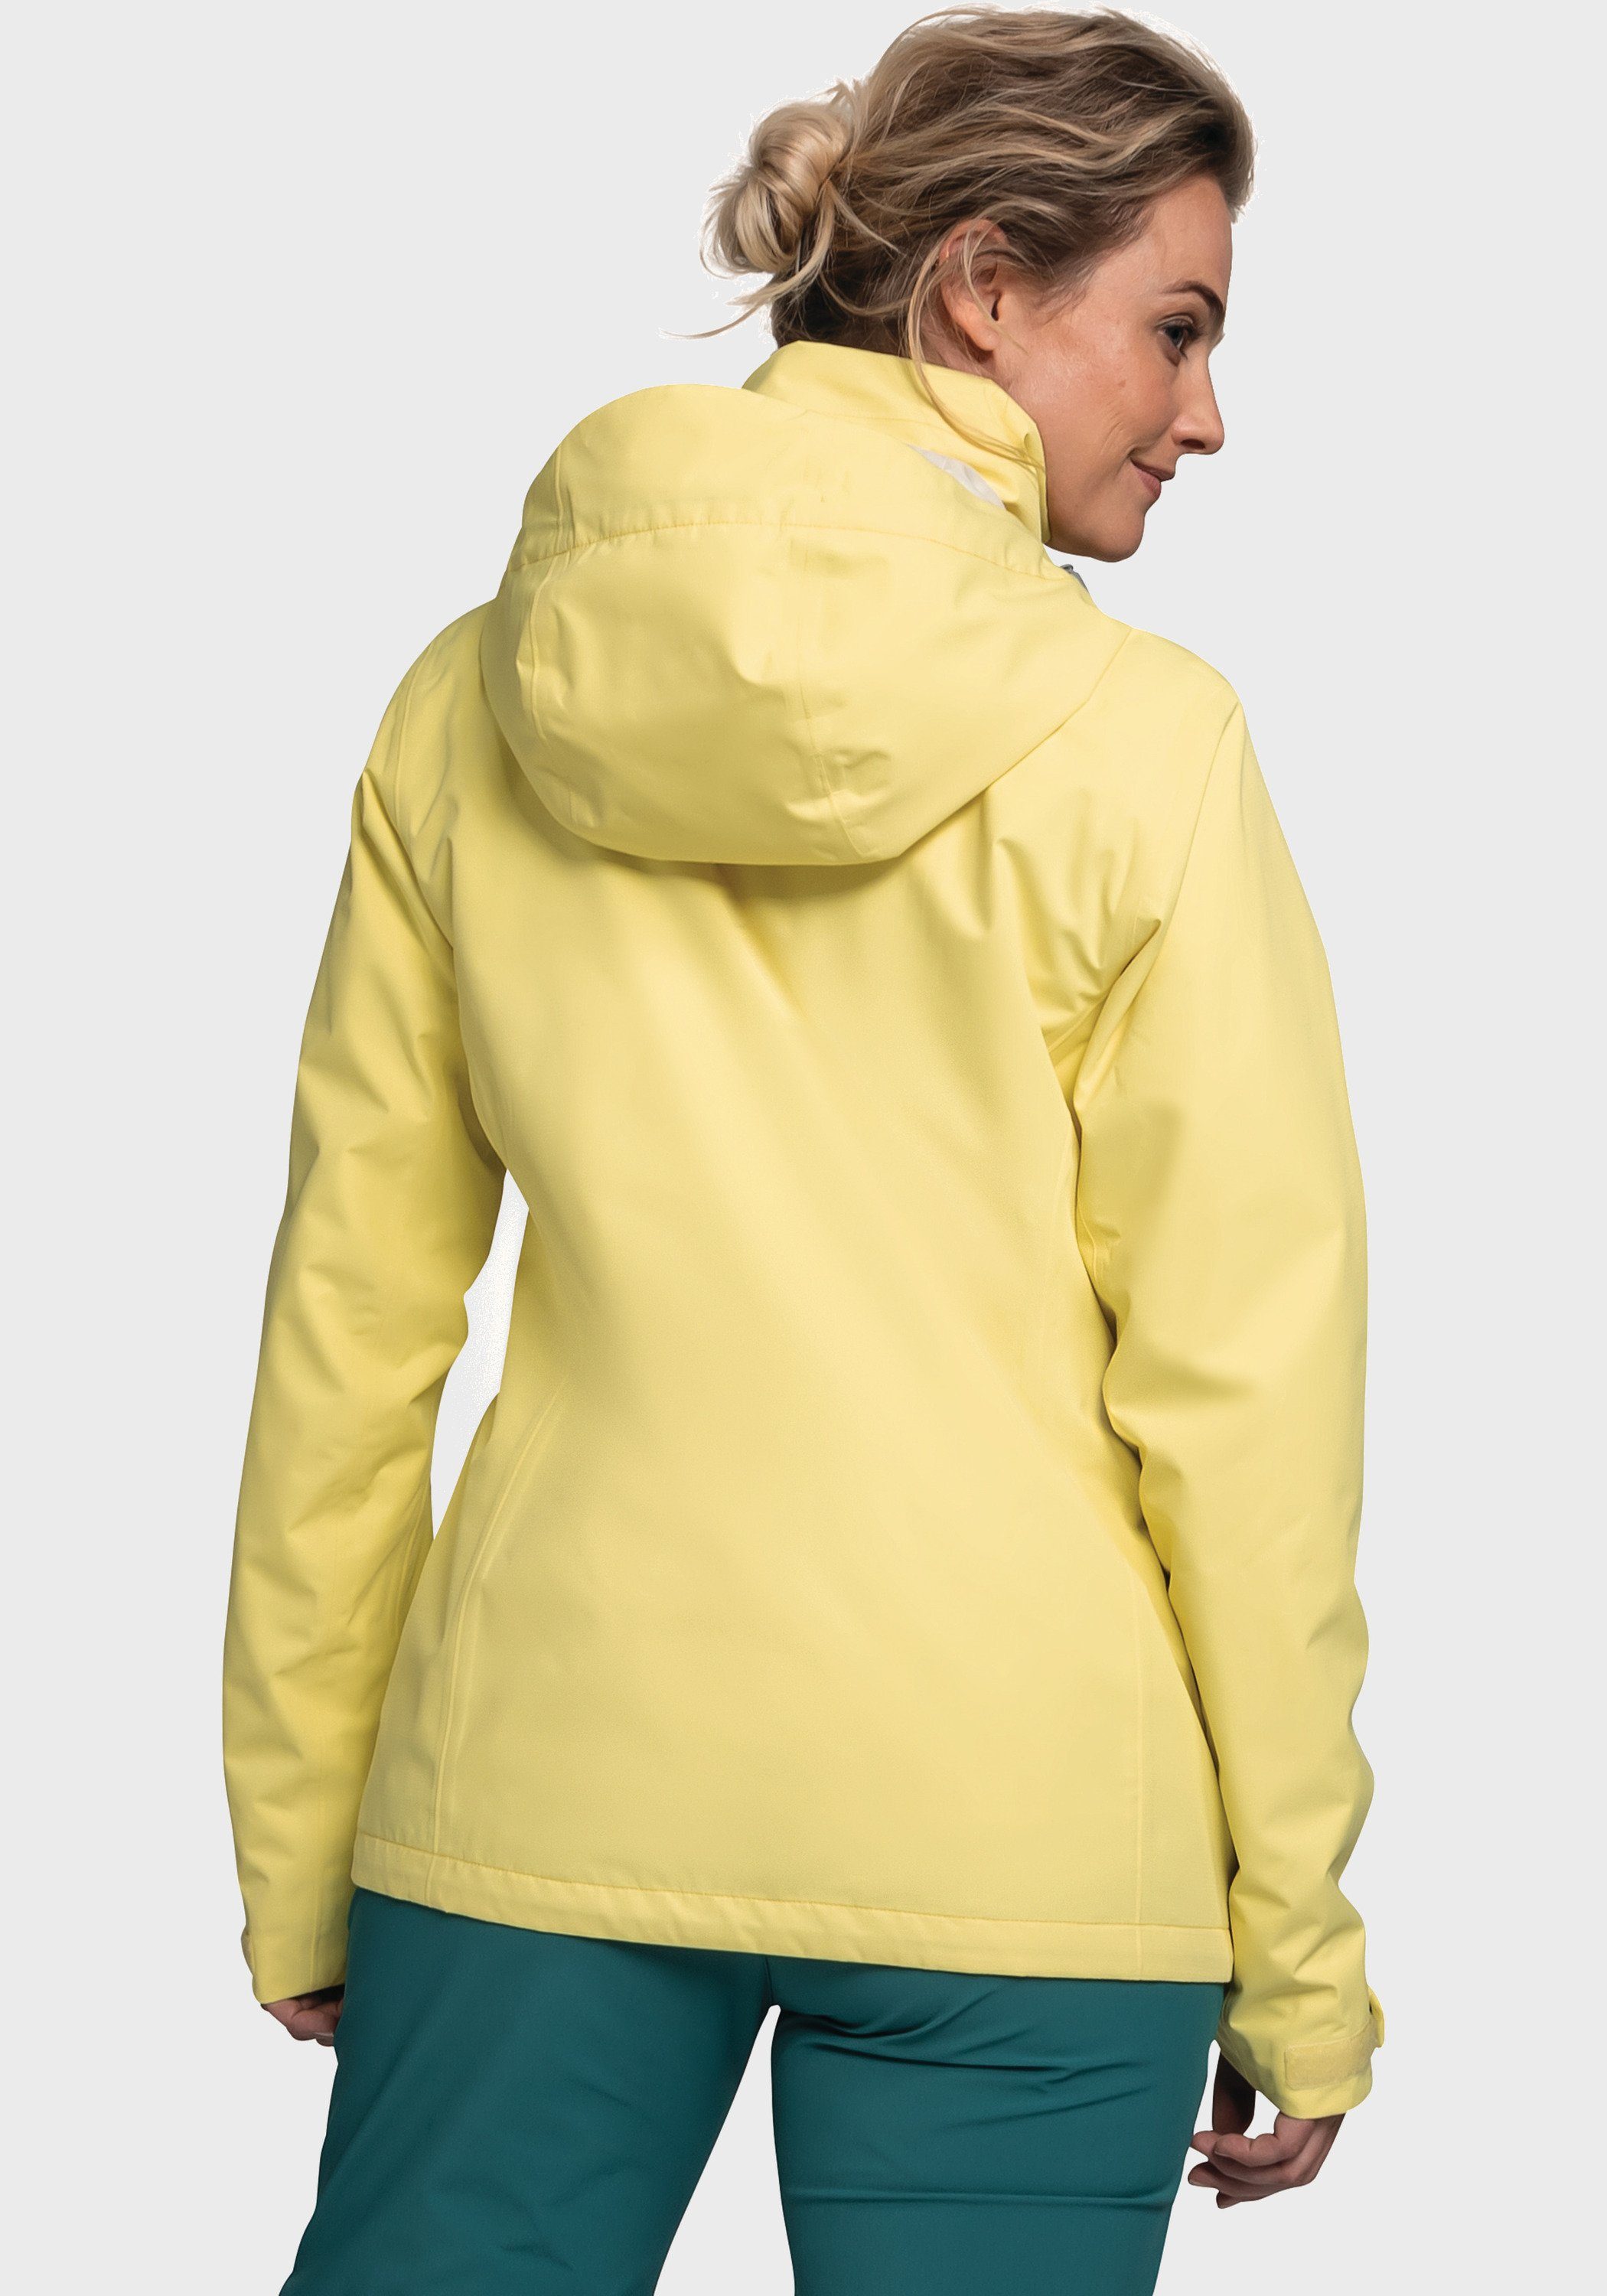 Jacket L Schöffel Outdoorjacke Gmund gelb